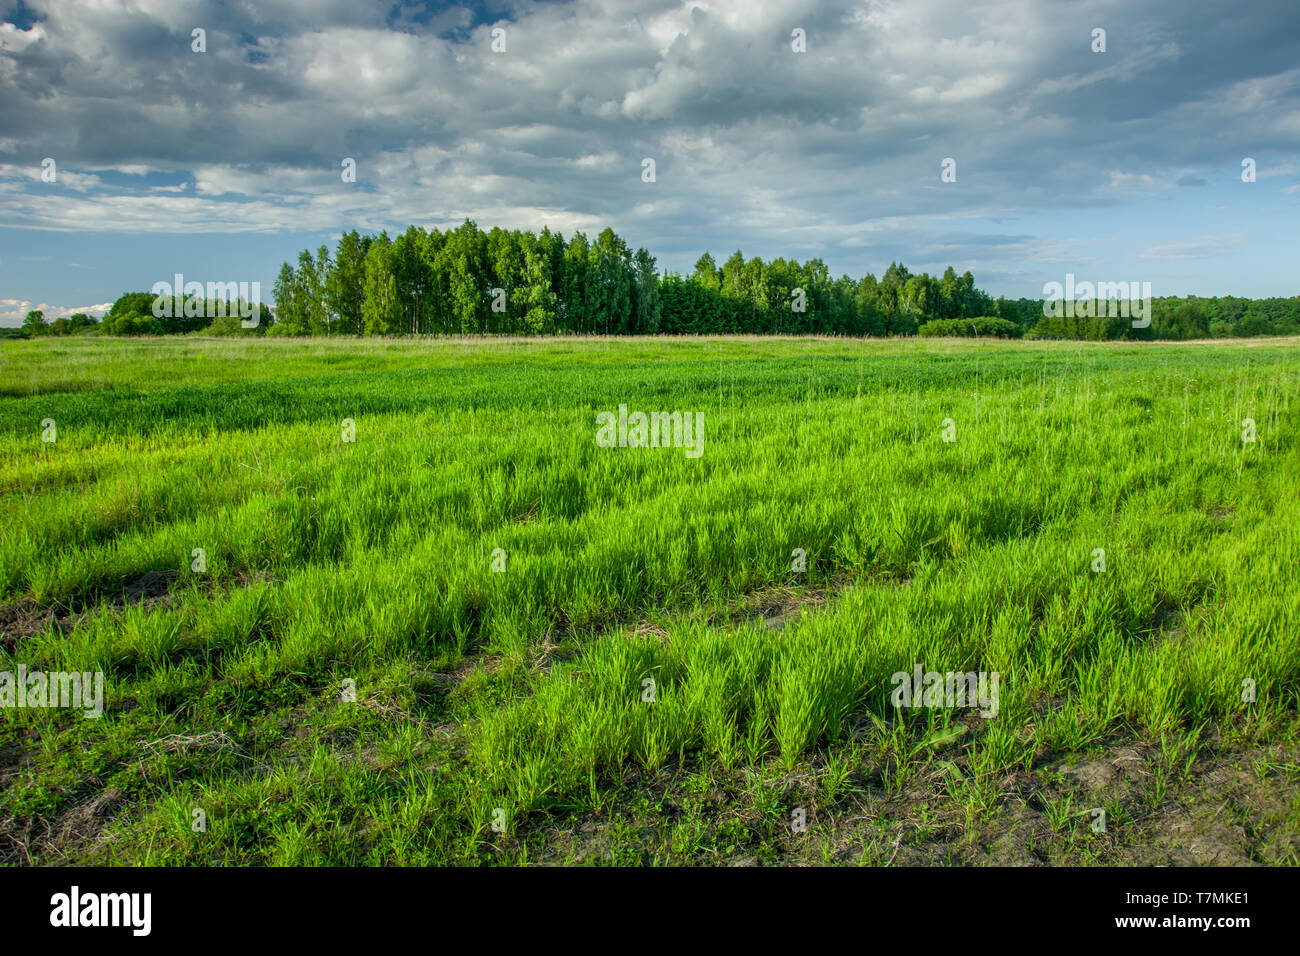 Frühjahr grünes Feld, Wald am Horizont und dunkle Wolken am Himmel - Zarzecze, Lubelskie, Polen Stockfoto